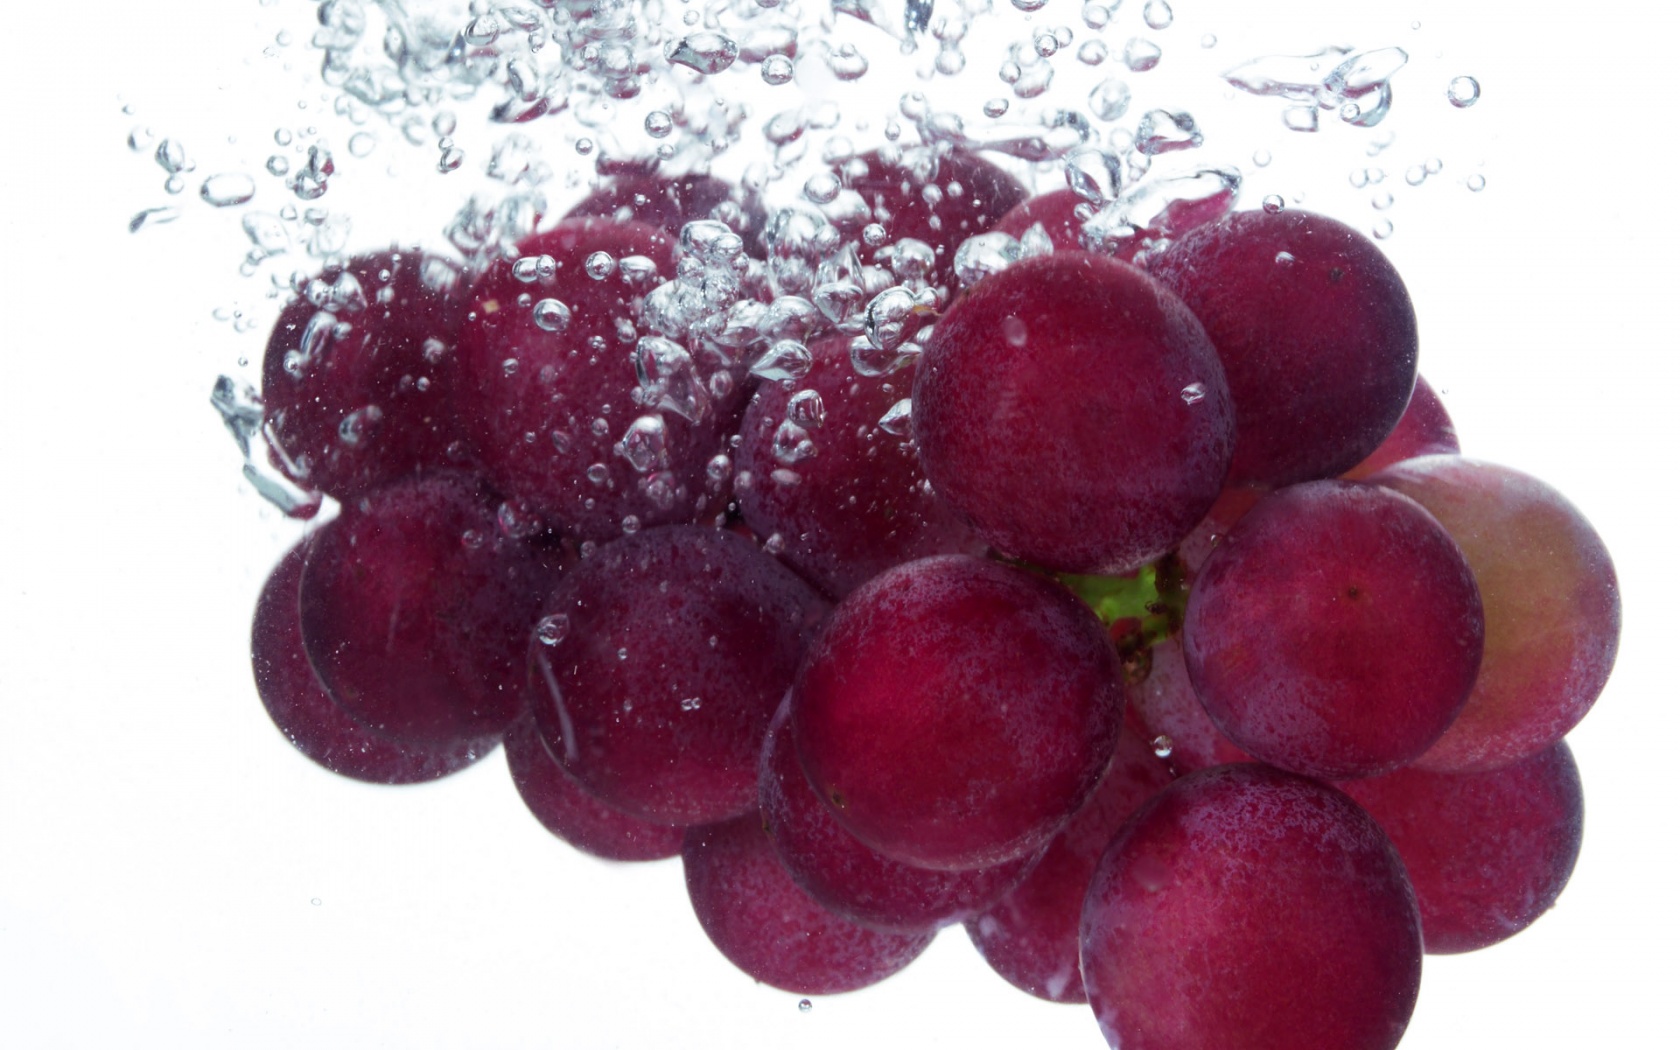 grape images